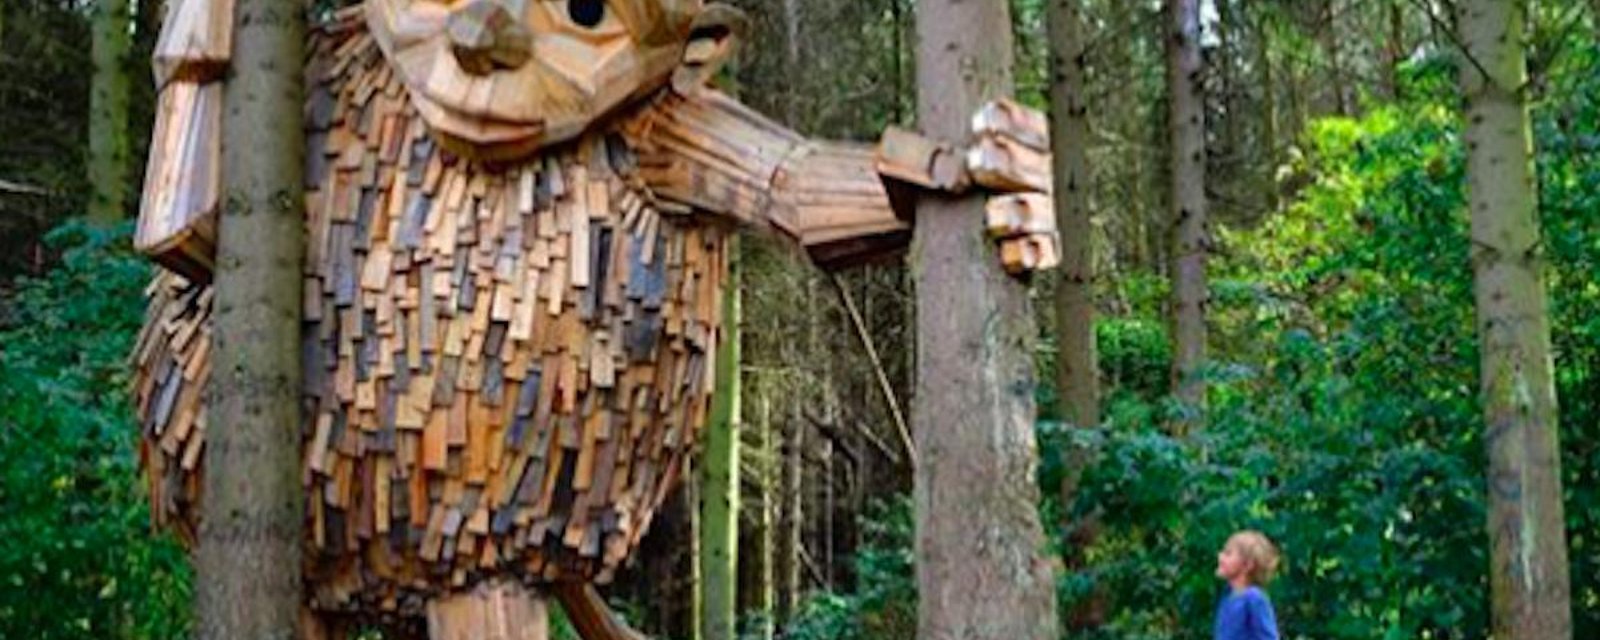 Un artiste réalise des sculptures géantes et les cache dans la nature environnant Copenhague